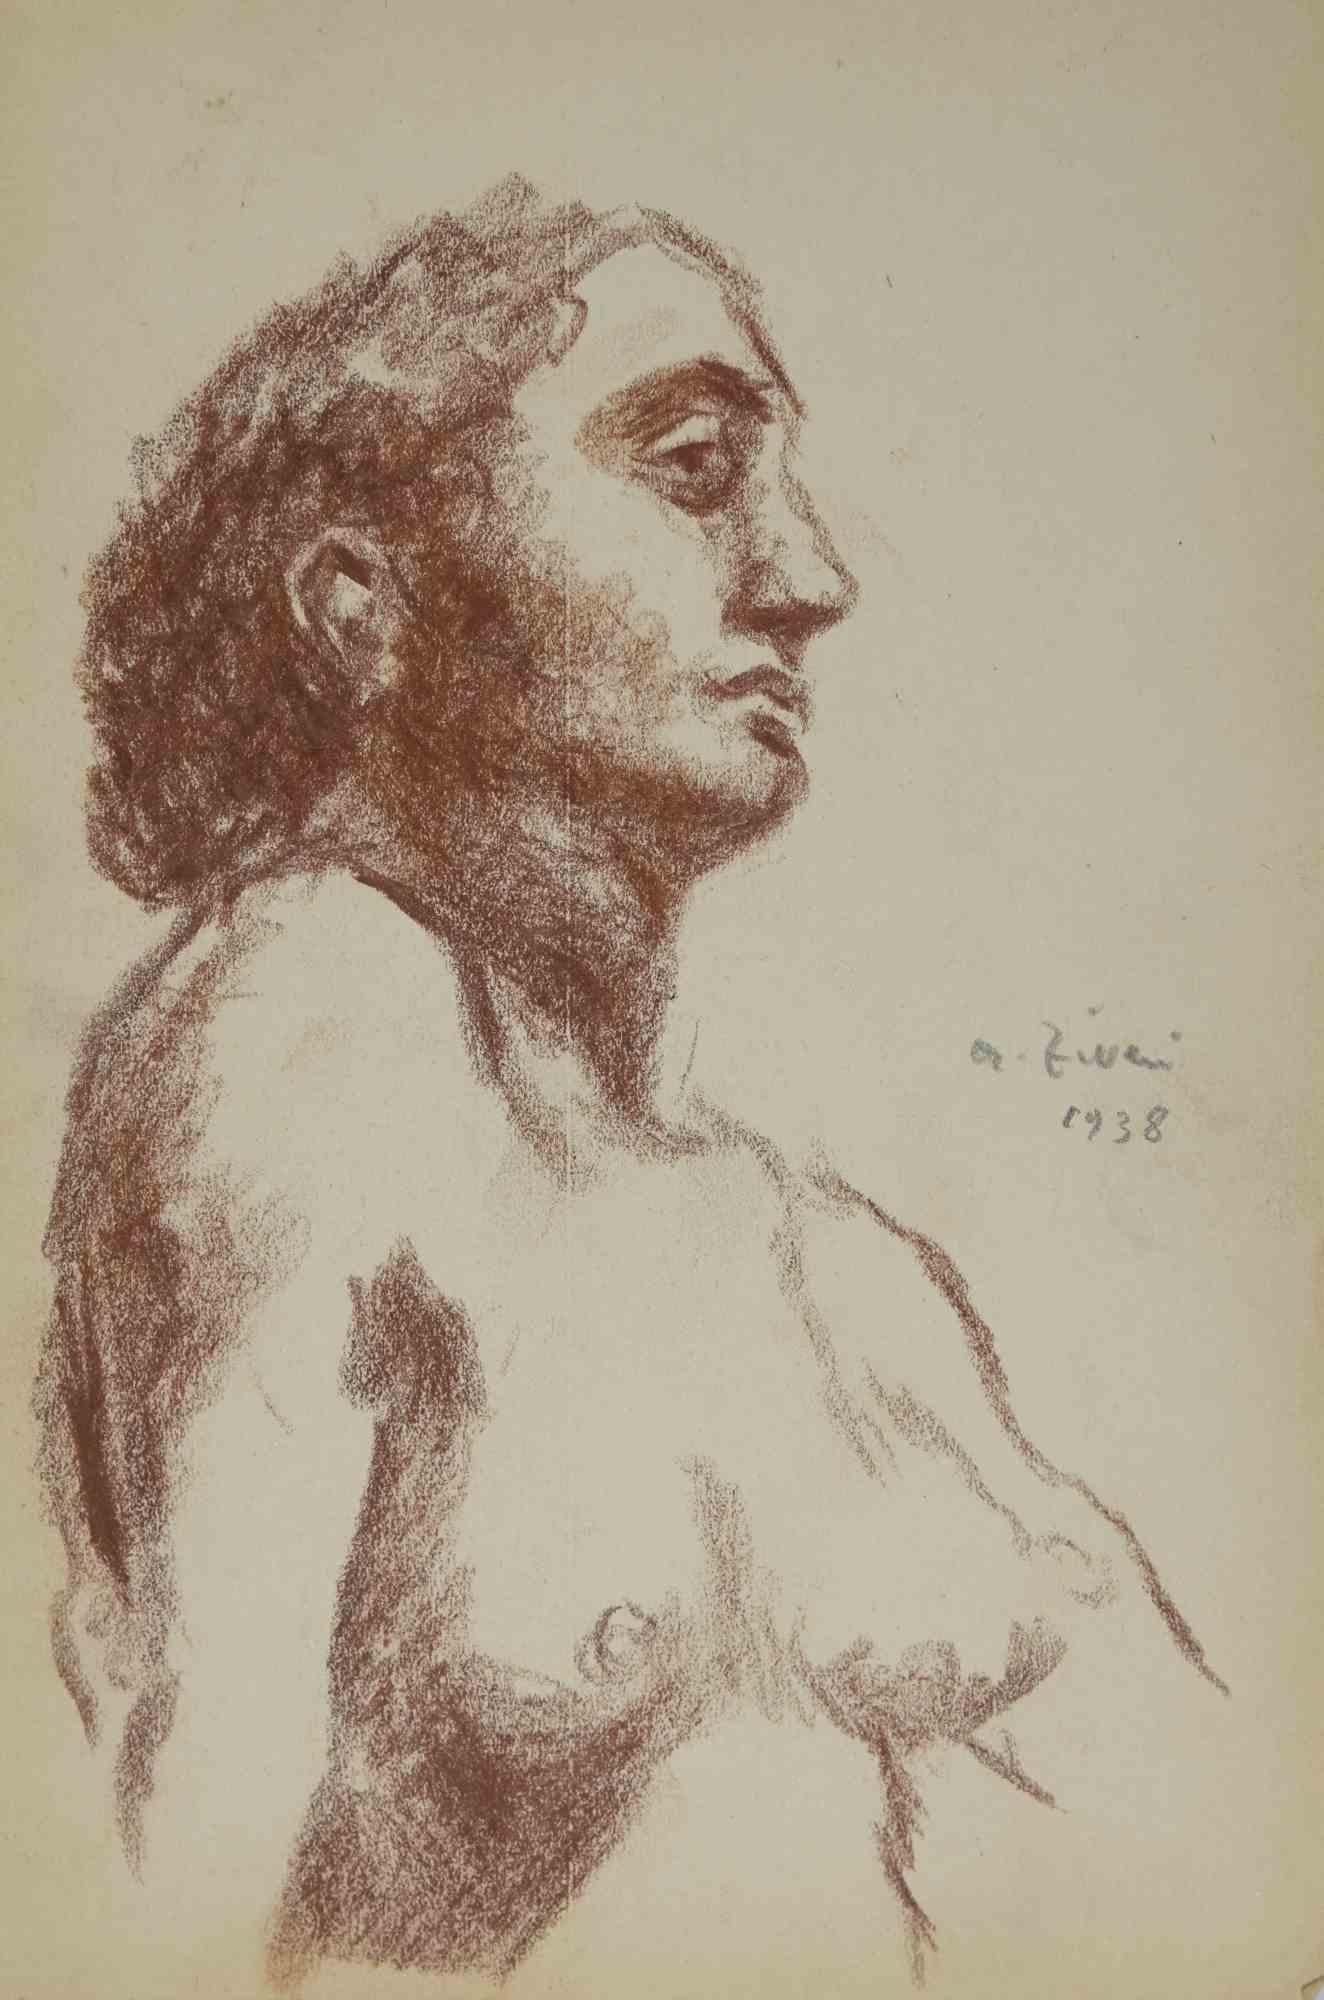 Das Porträt ist eine Zeichnung von Alberto Ziveri aus dem Jahr 1938.

Ölpastell auf Papier.

Handsigniert und datiert.

In gutem Zustand.

Das Kunstwerk wird durch geschickte Striche meisterhaft dargestellt.

Alberto Ziveri (Rom, 1908 - 1990), der